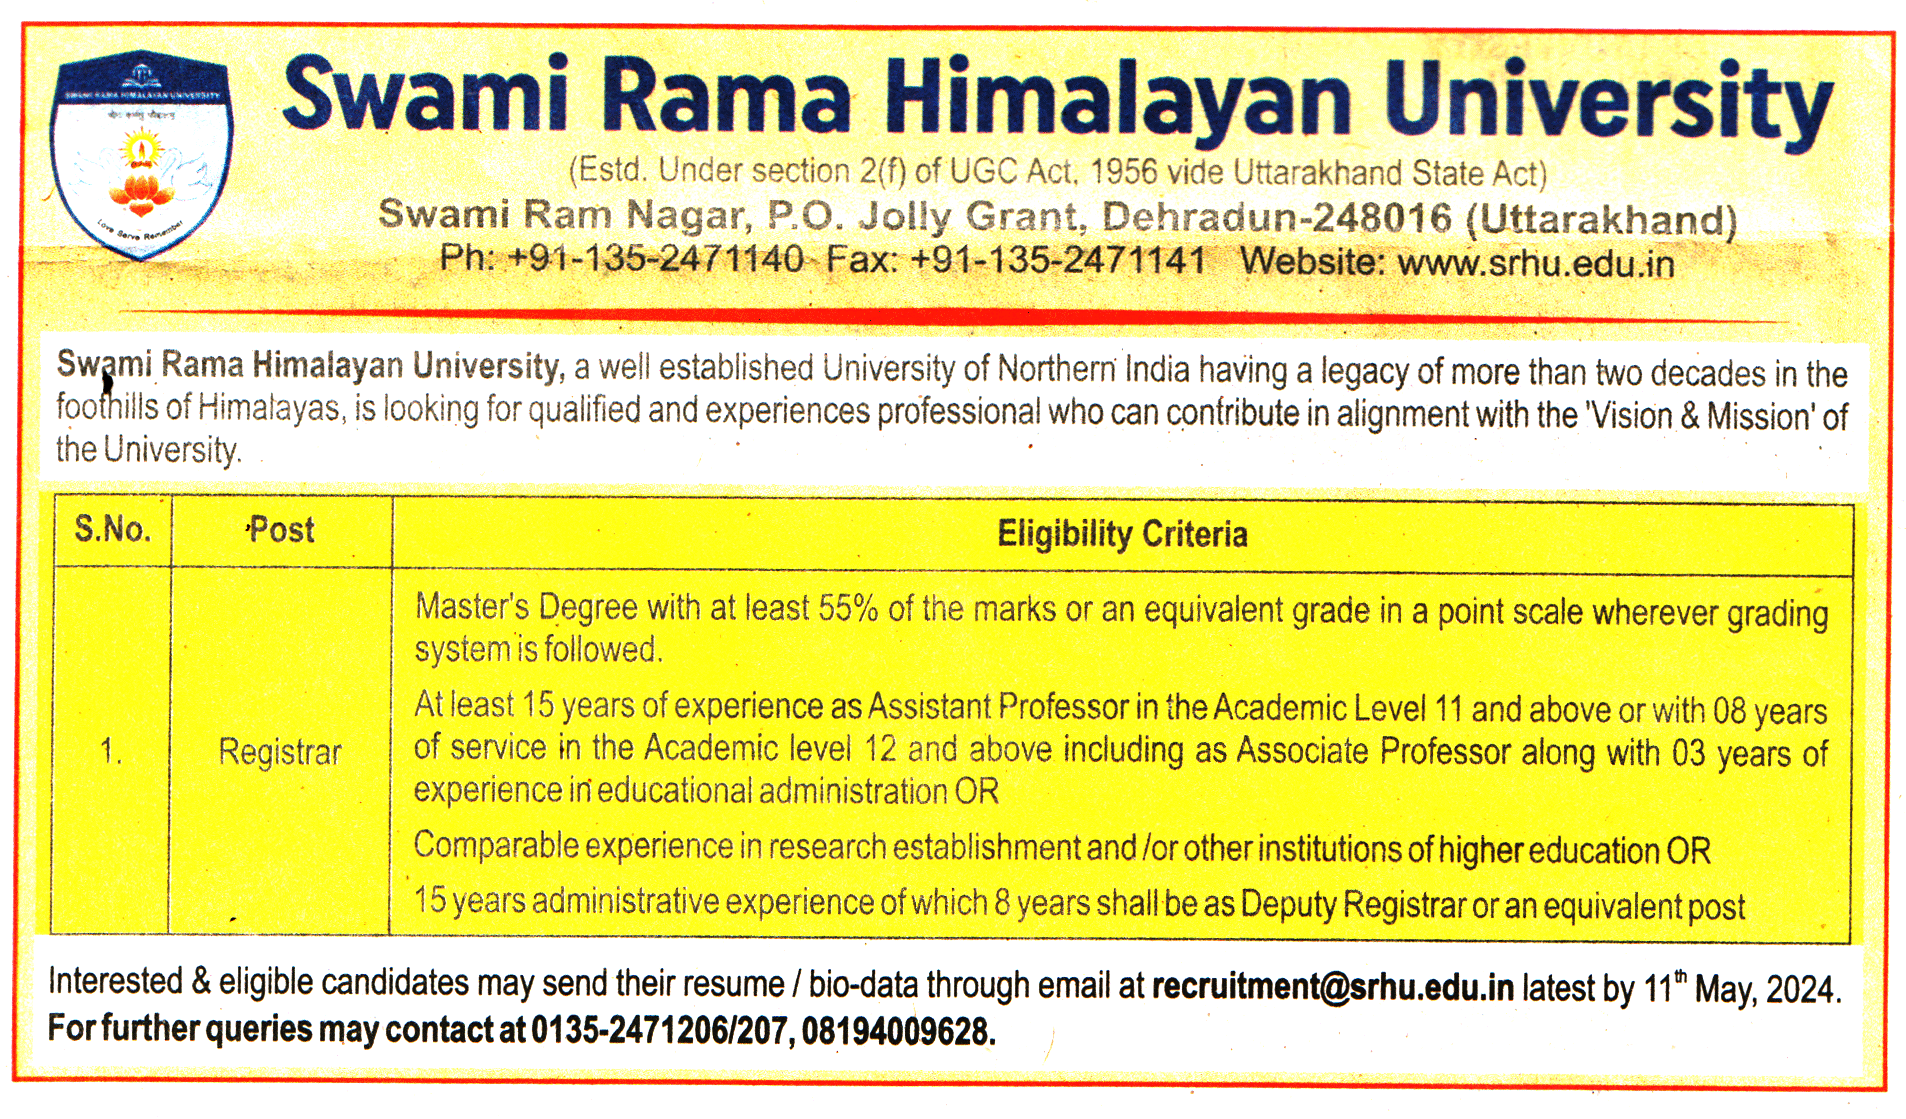 Swami Rama Himalayan University (SRHU) Dehradun Recruitment